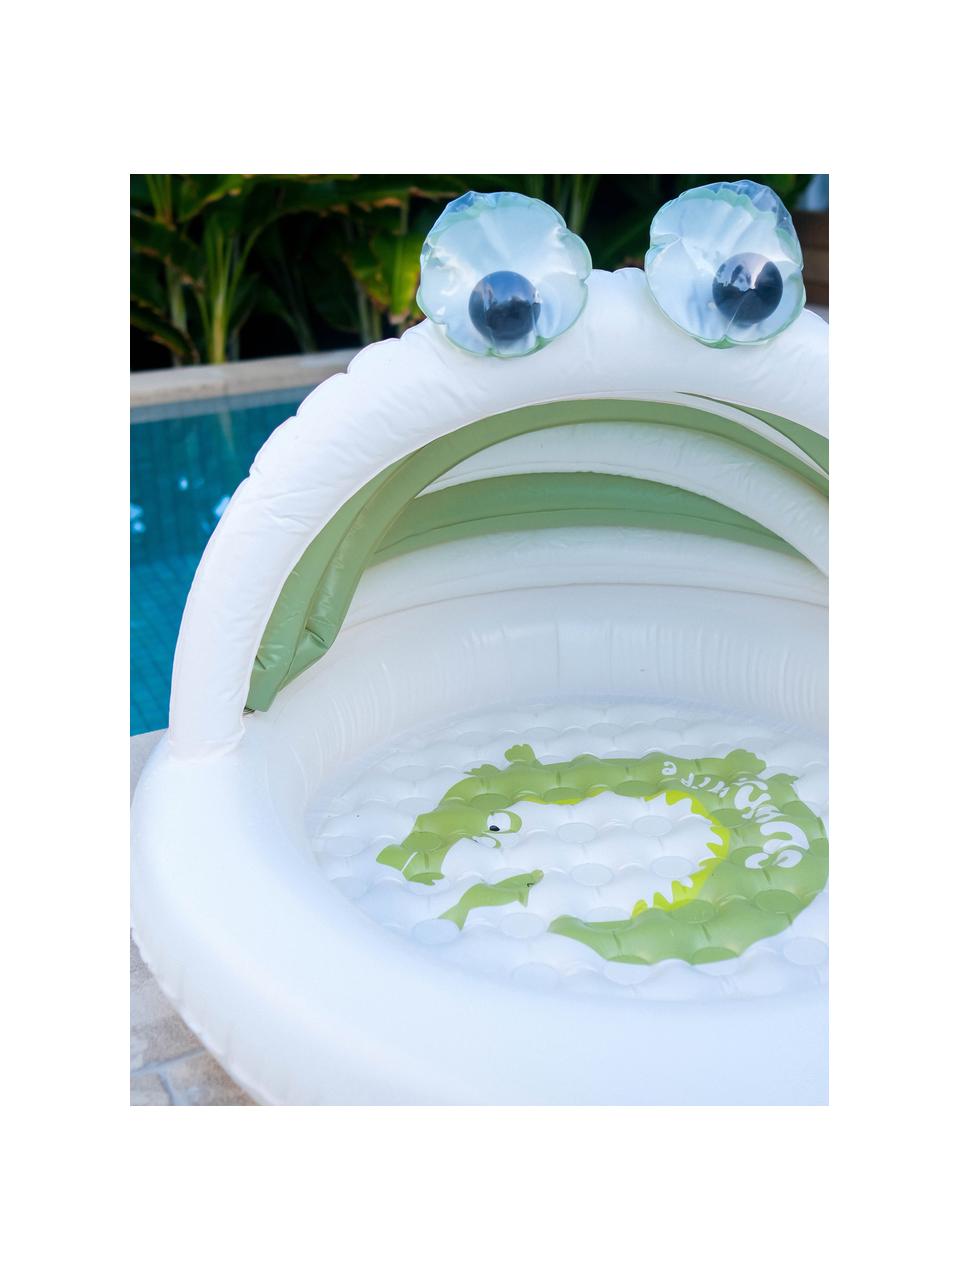 Dmuchany basen dziecięcy Cookie the Croc, Tworzywo sztuczne, Złamana biel, oliwkowy zielony, S 100 x D 115 cm